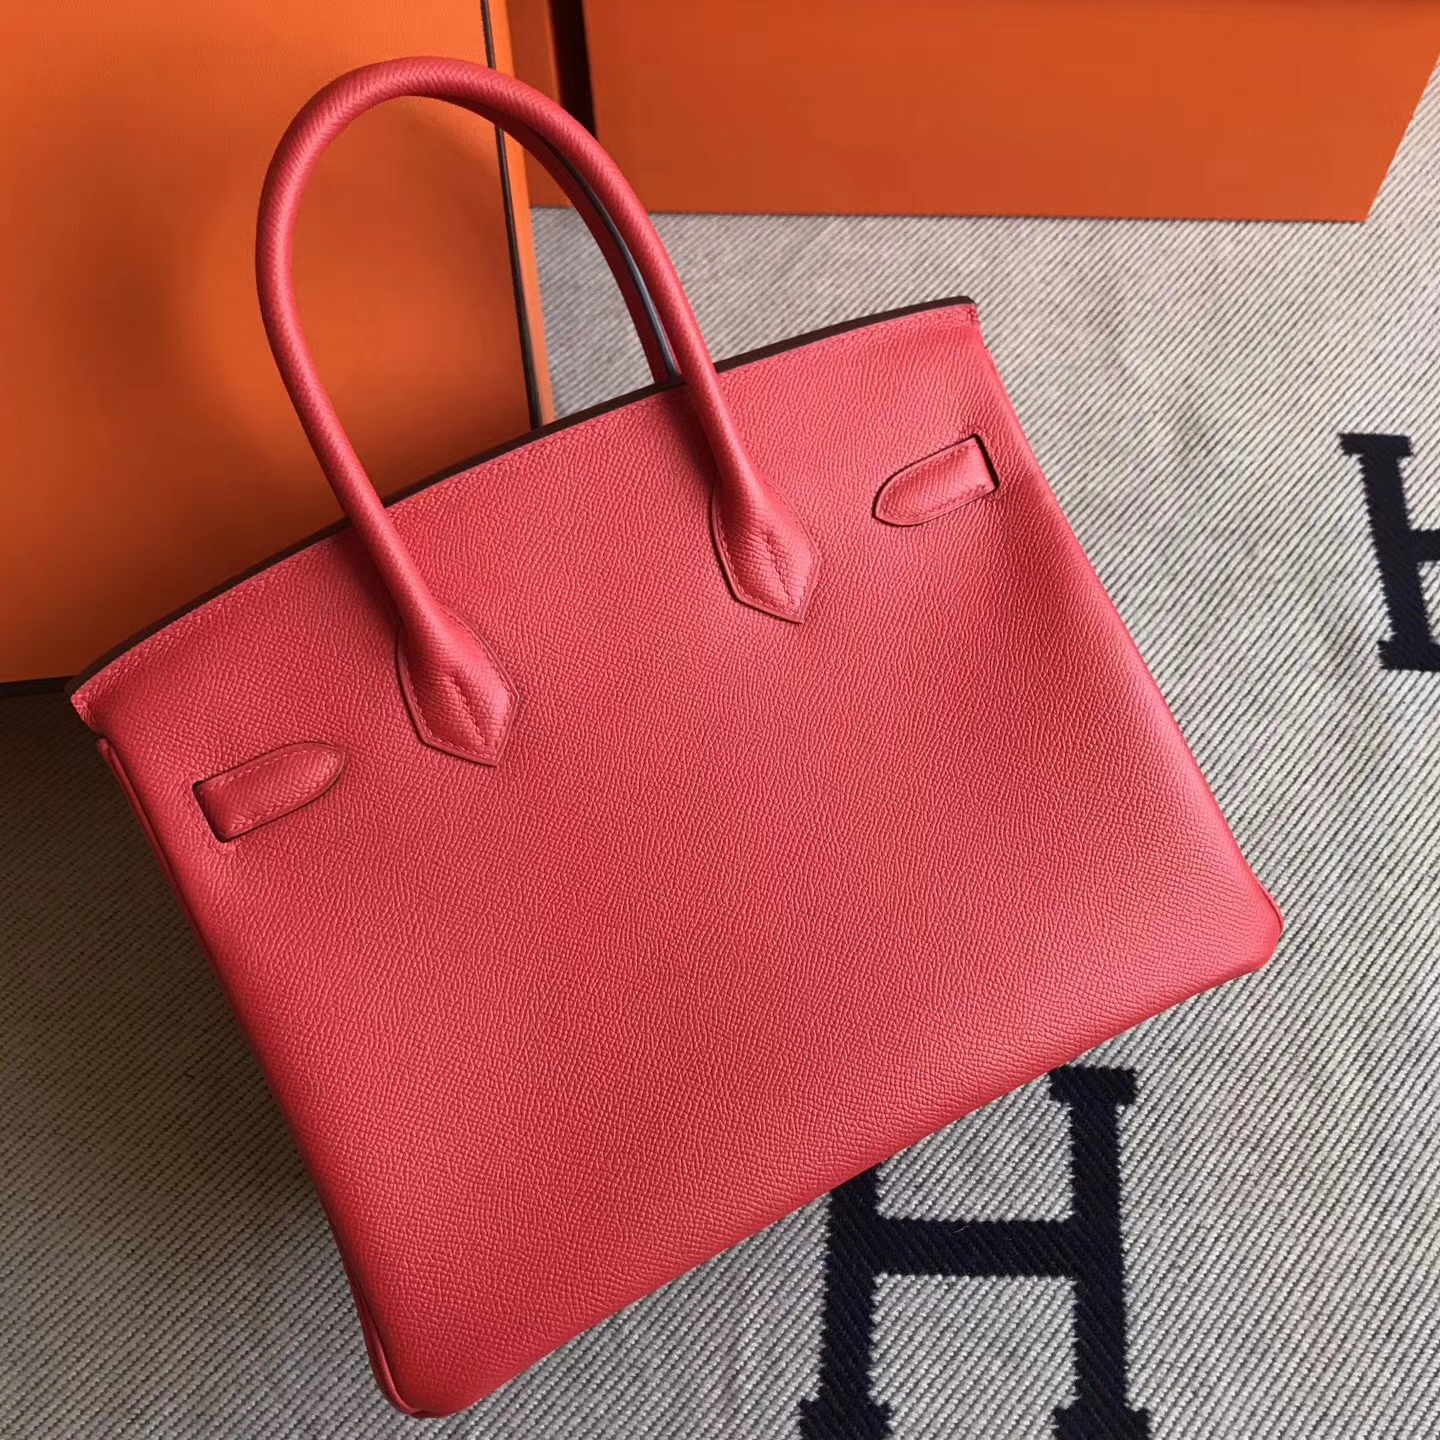 New Arrival Hermes S5 Tomato Red Epsom Leather Birkin30cm Handbag